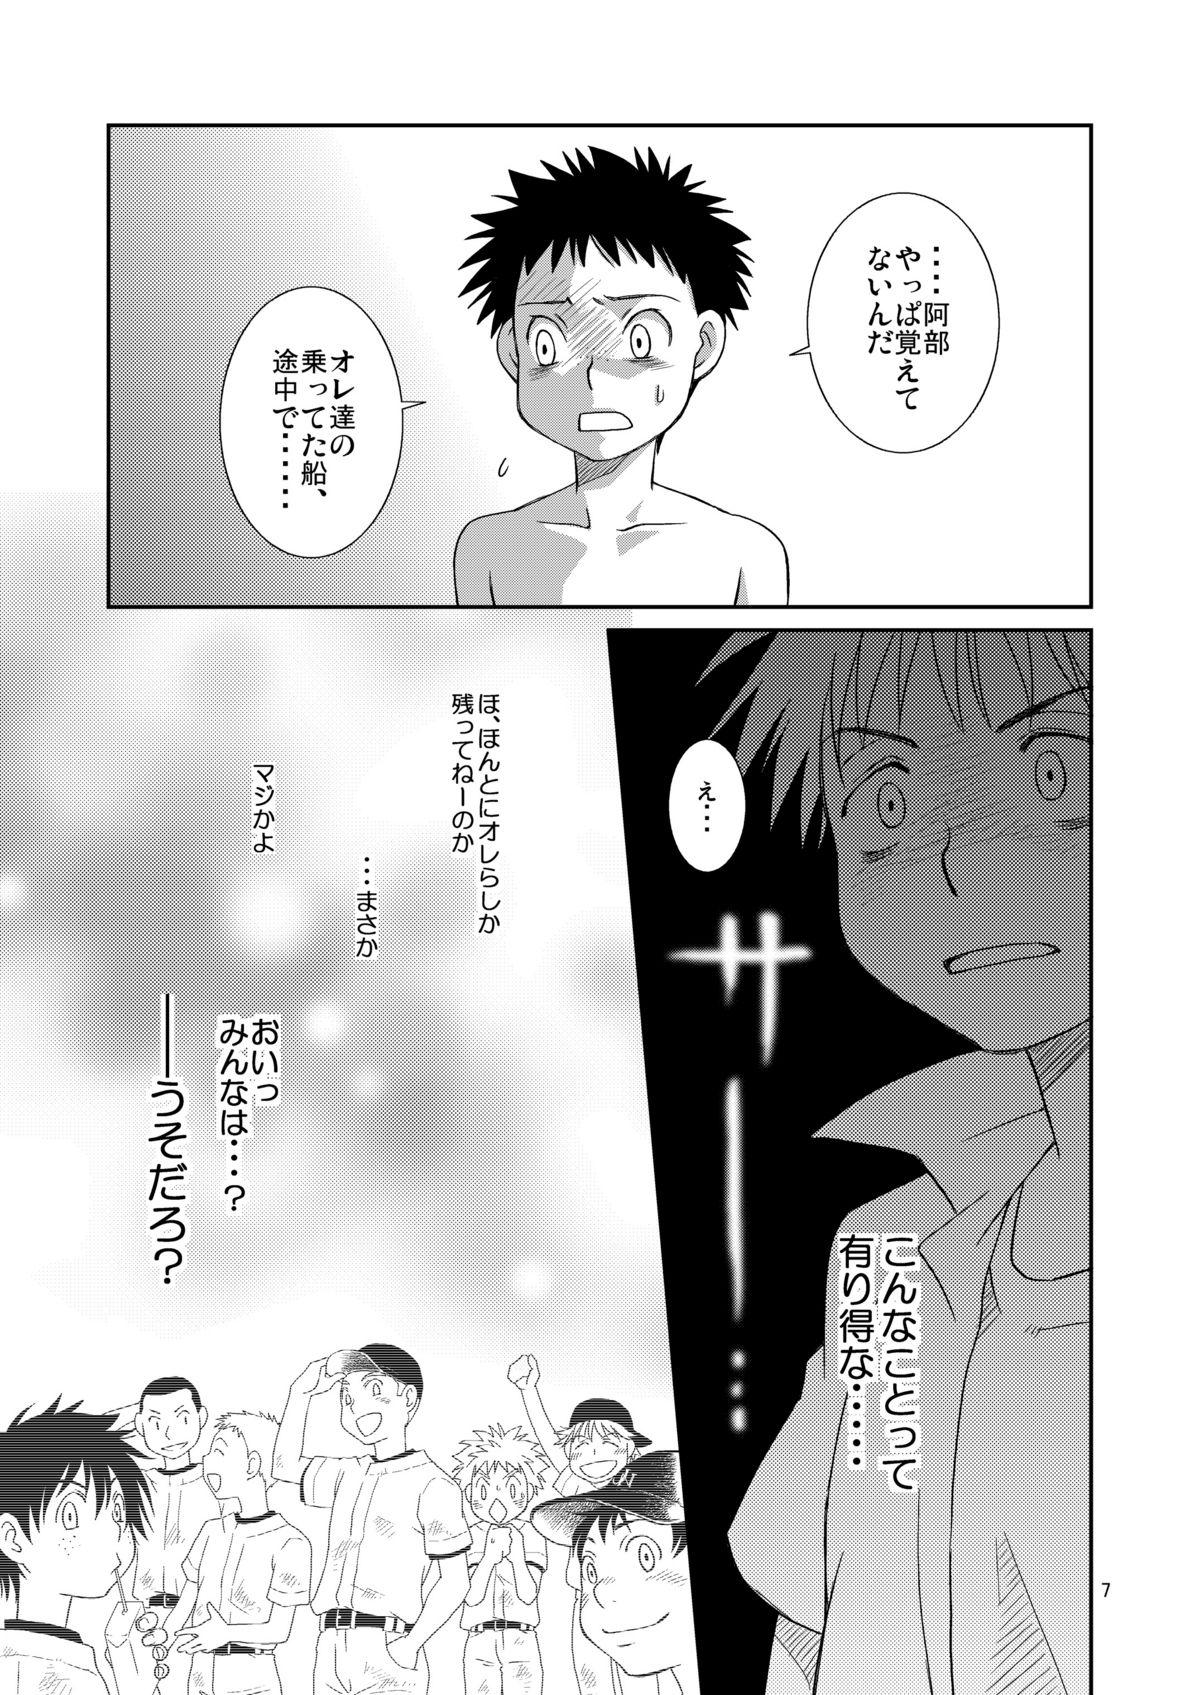 Novinho Tsuyudaku Fight! - Ookiku furikabutte Bdsm - Page 7